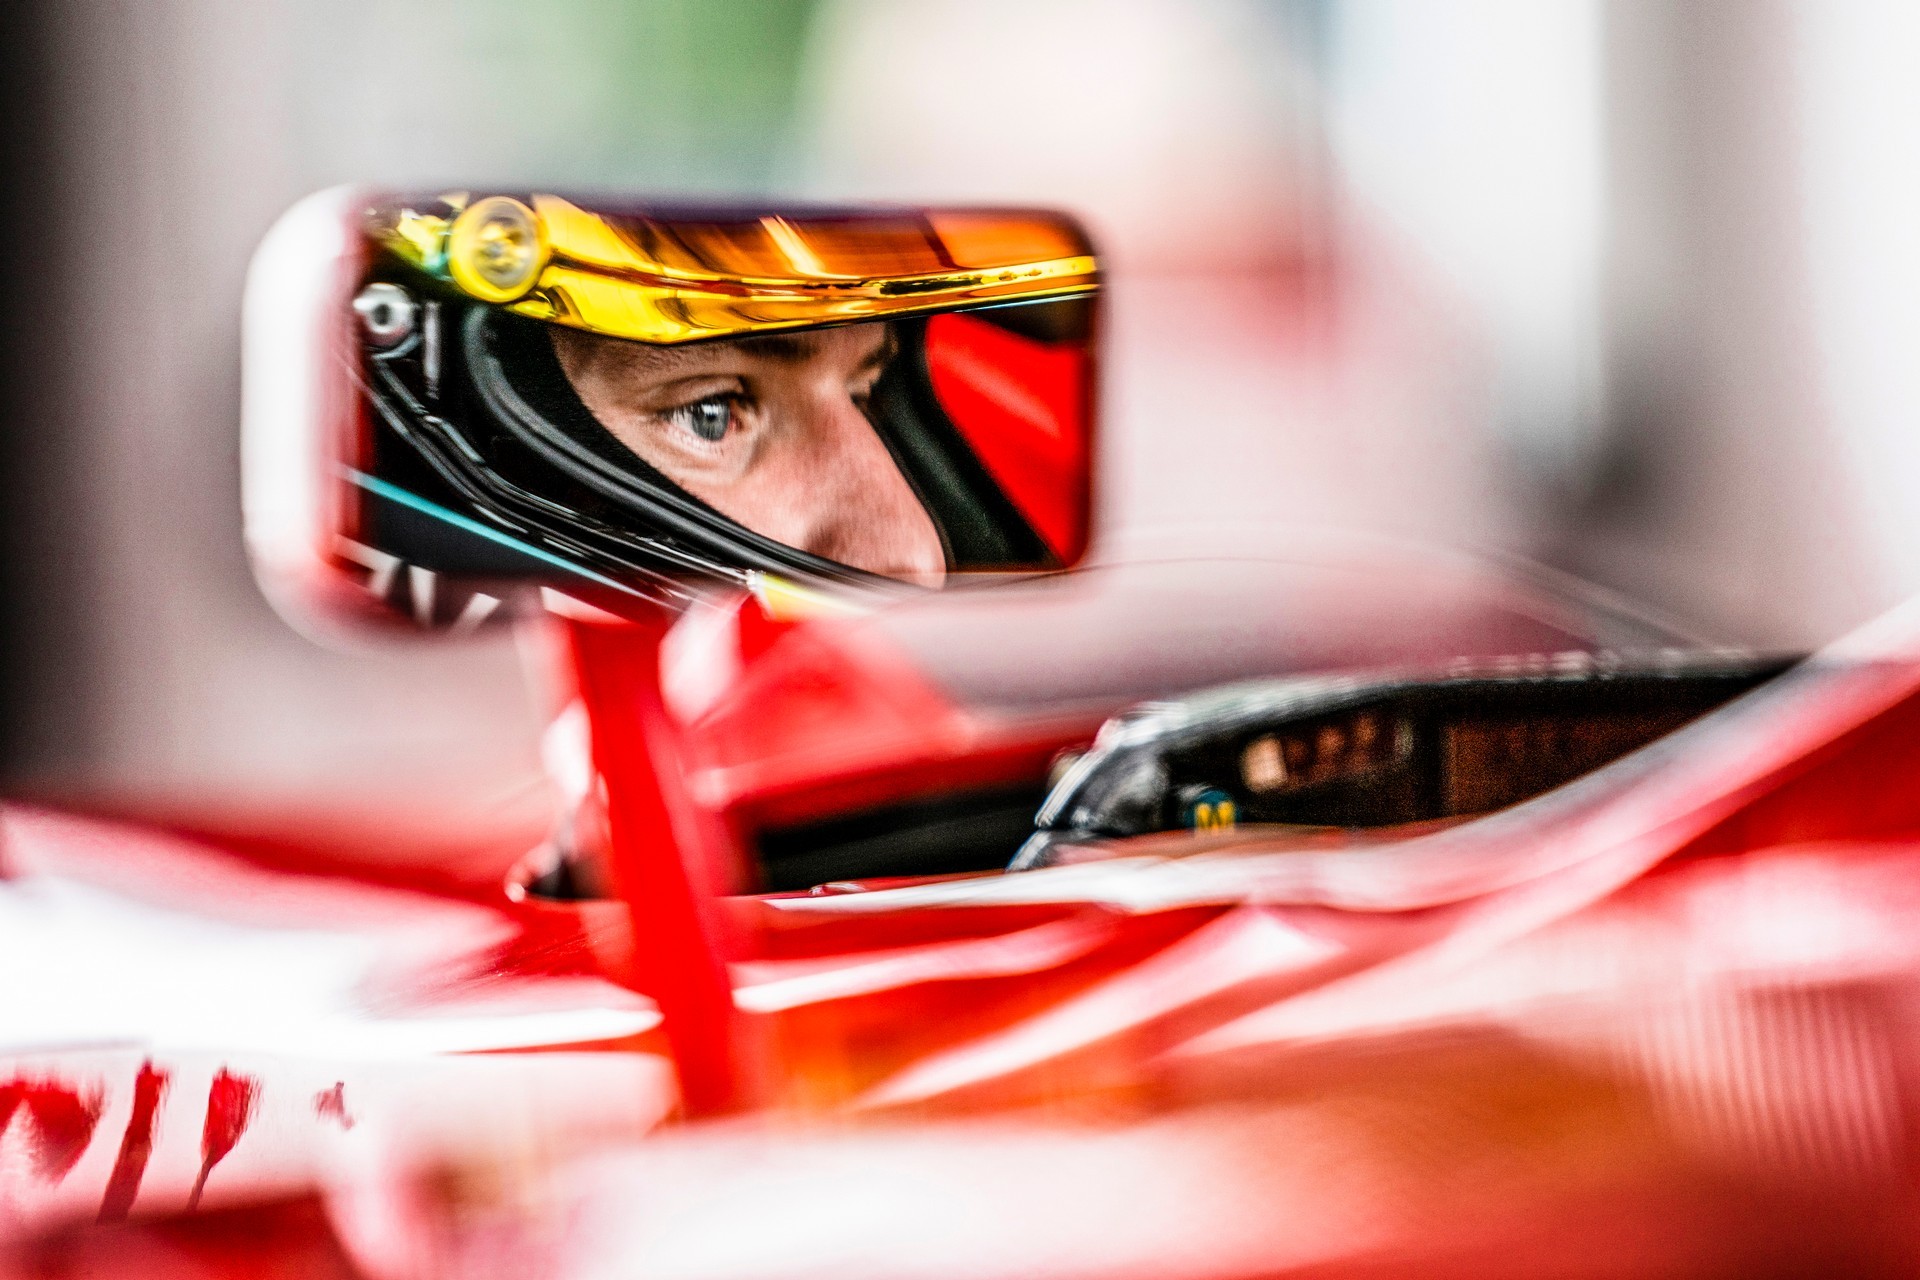 Mick Schumacher wins at Monza! – Chris on F1